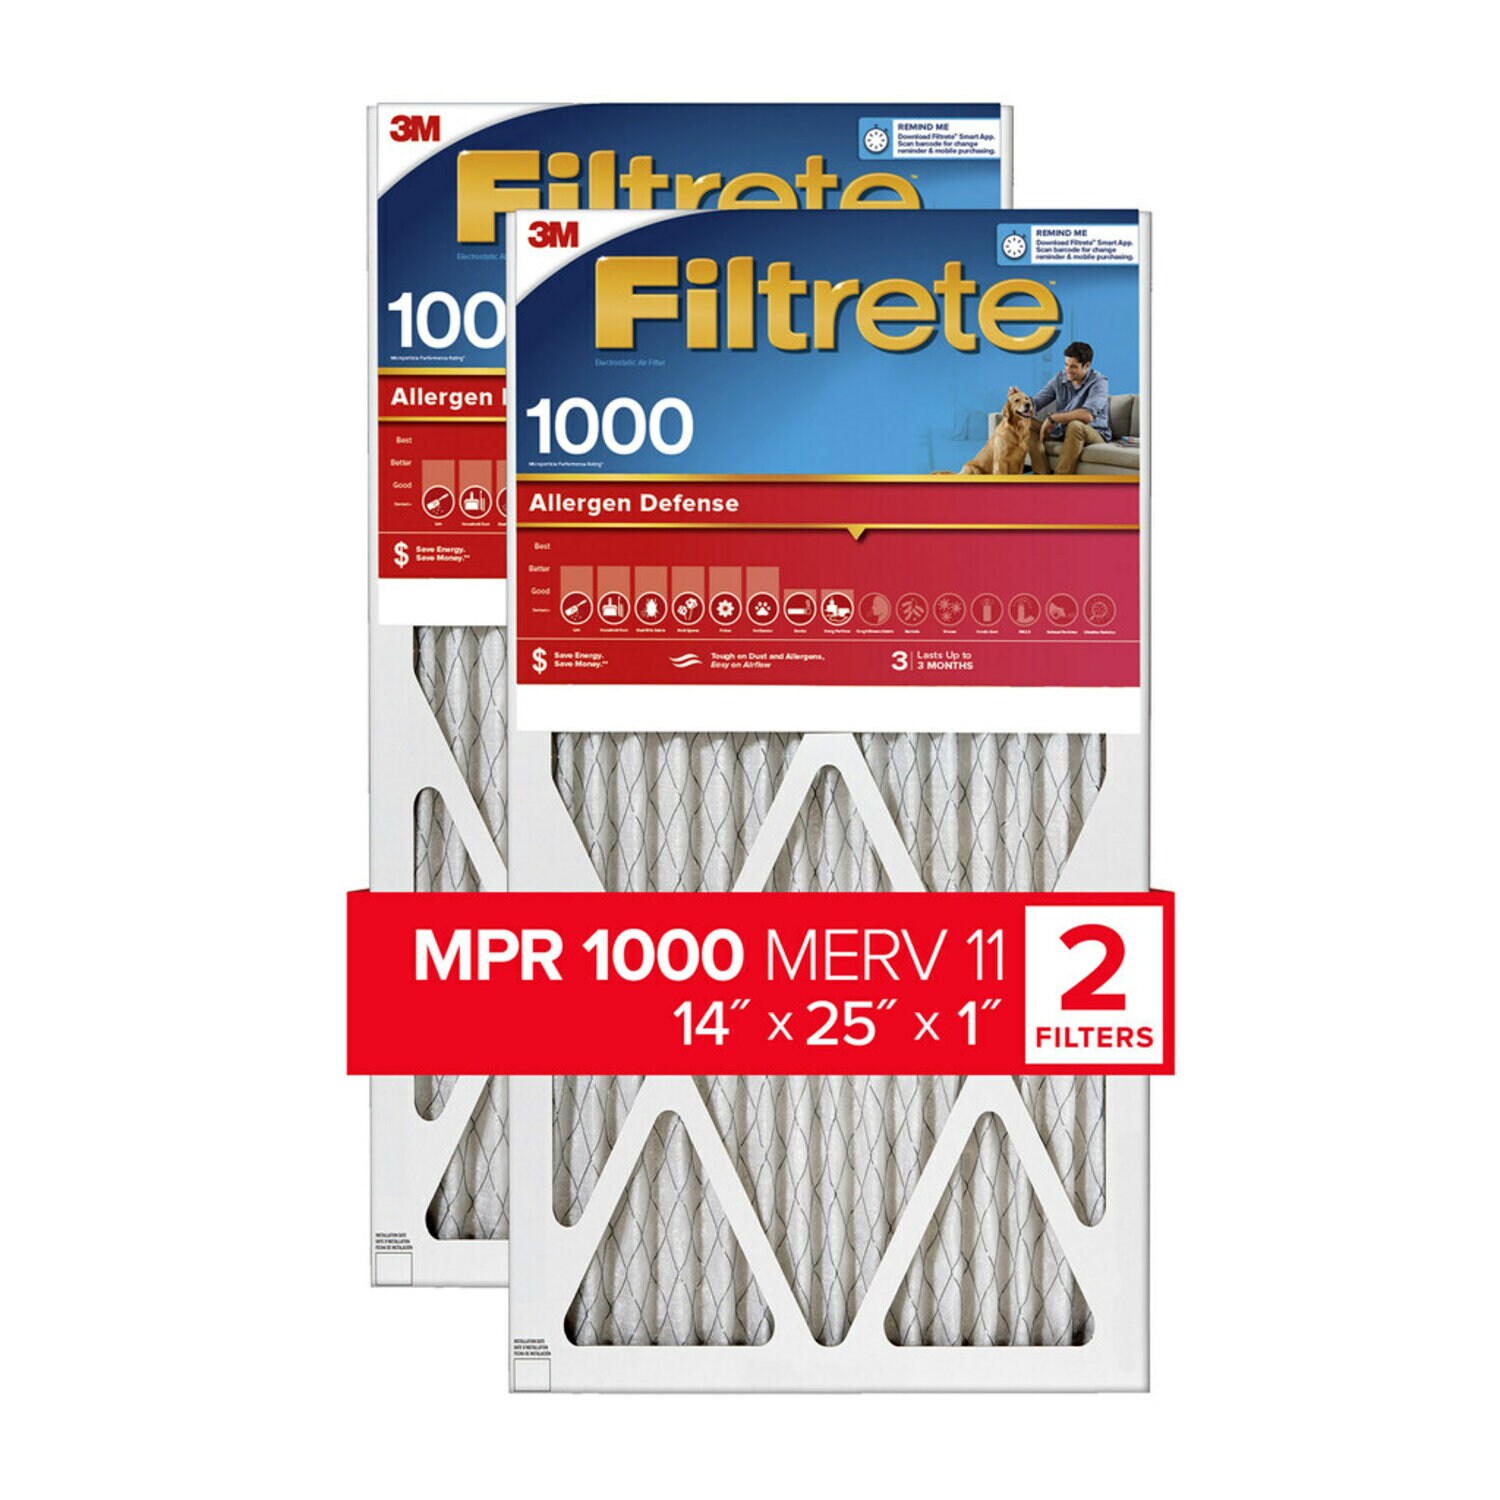 7100188275 - Filtrete Allergen Defense Air Filter, 1000 MPR, 9804-2PK-HDW, 14 in x
25 in x 1 in (35,5 cm x 63,5 cm x 2,5 cm)